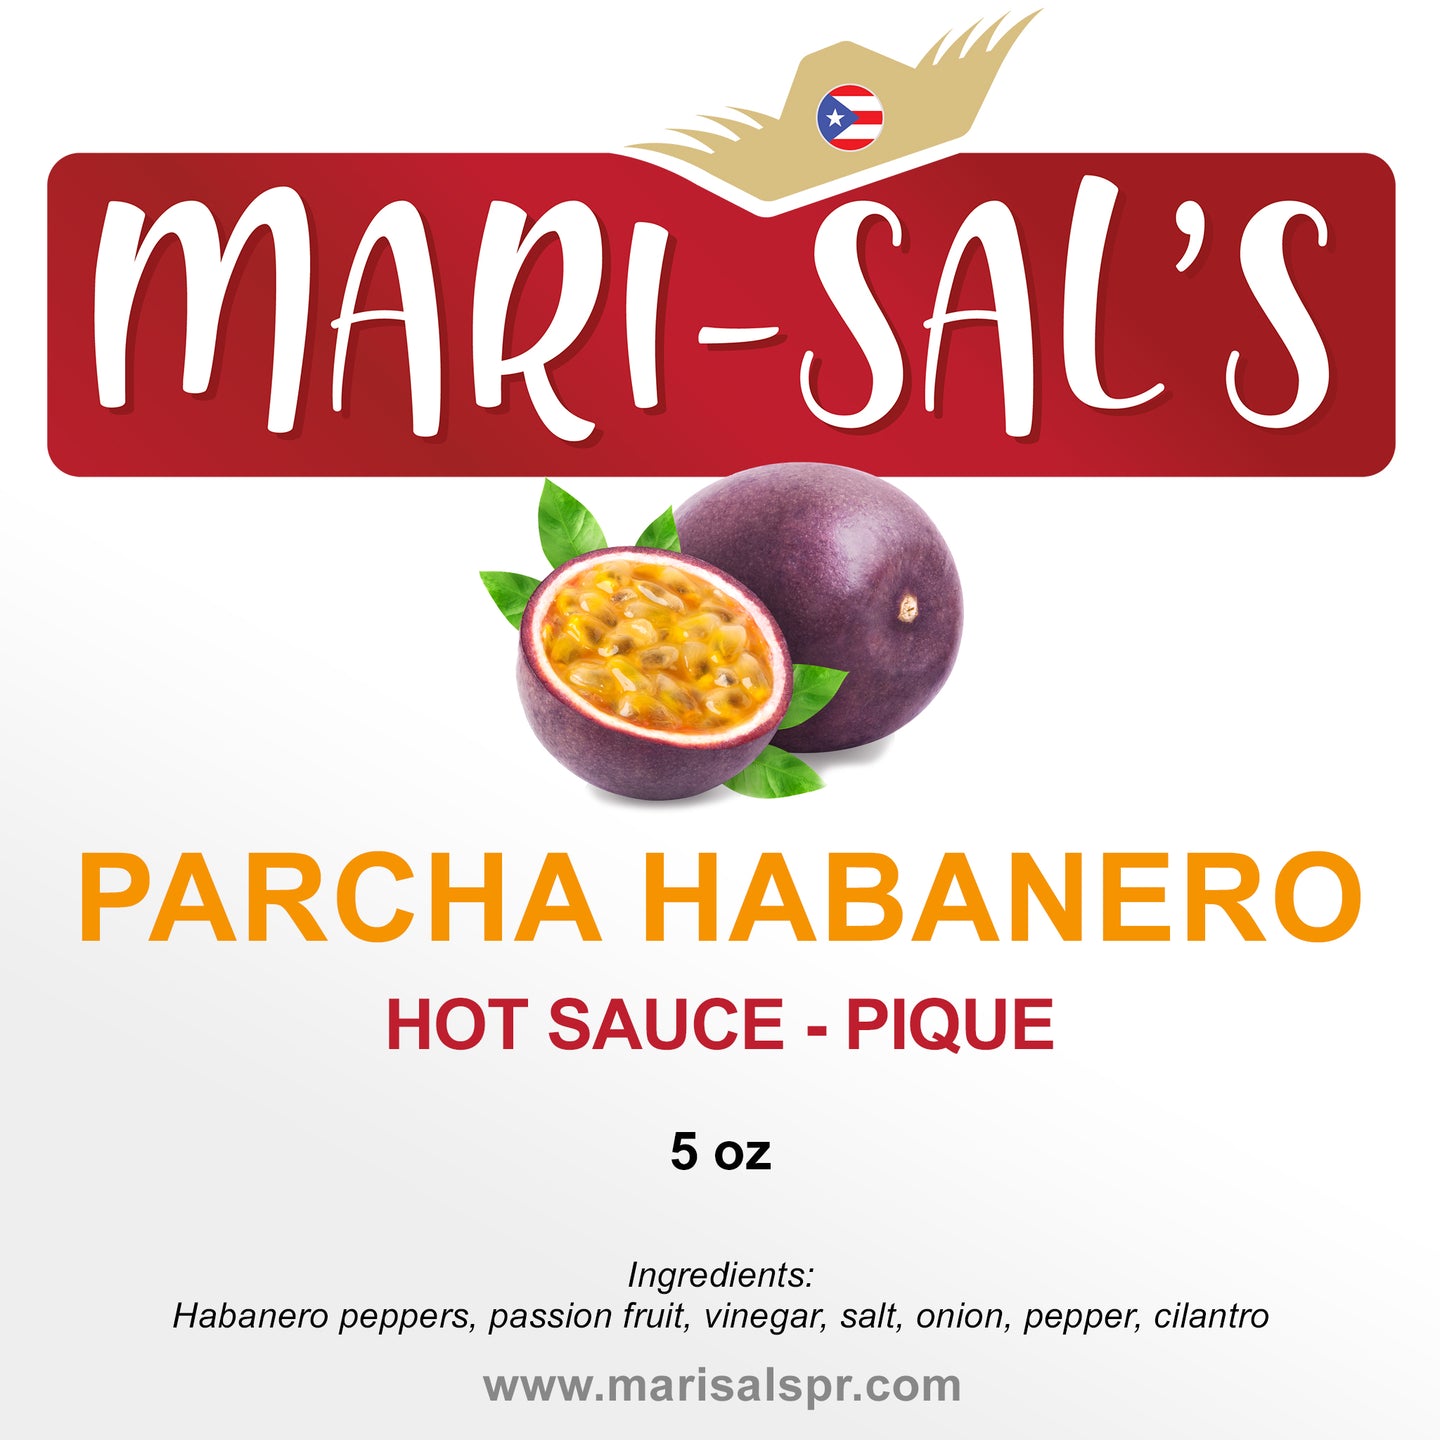 Mari-Sal's Hot Sauce - Parcha Habanero